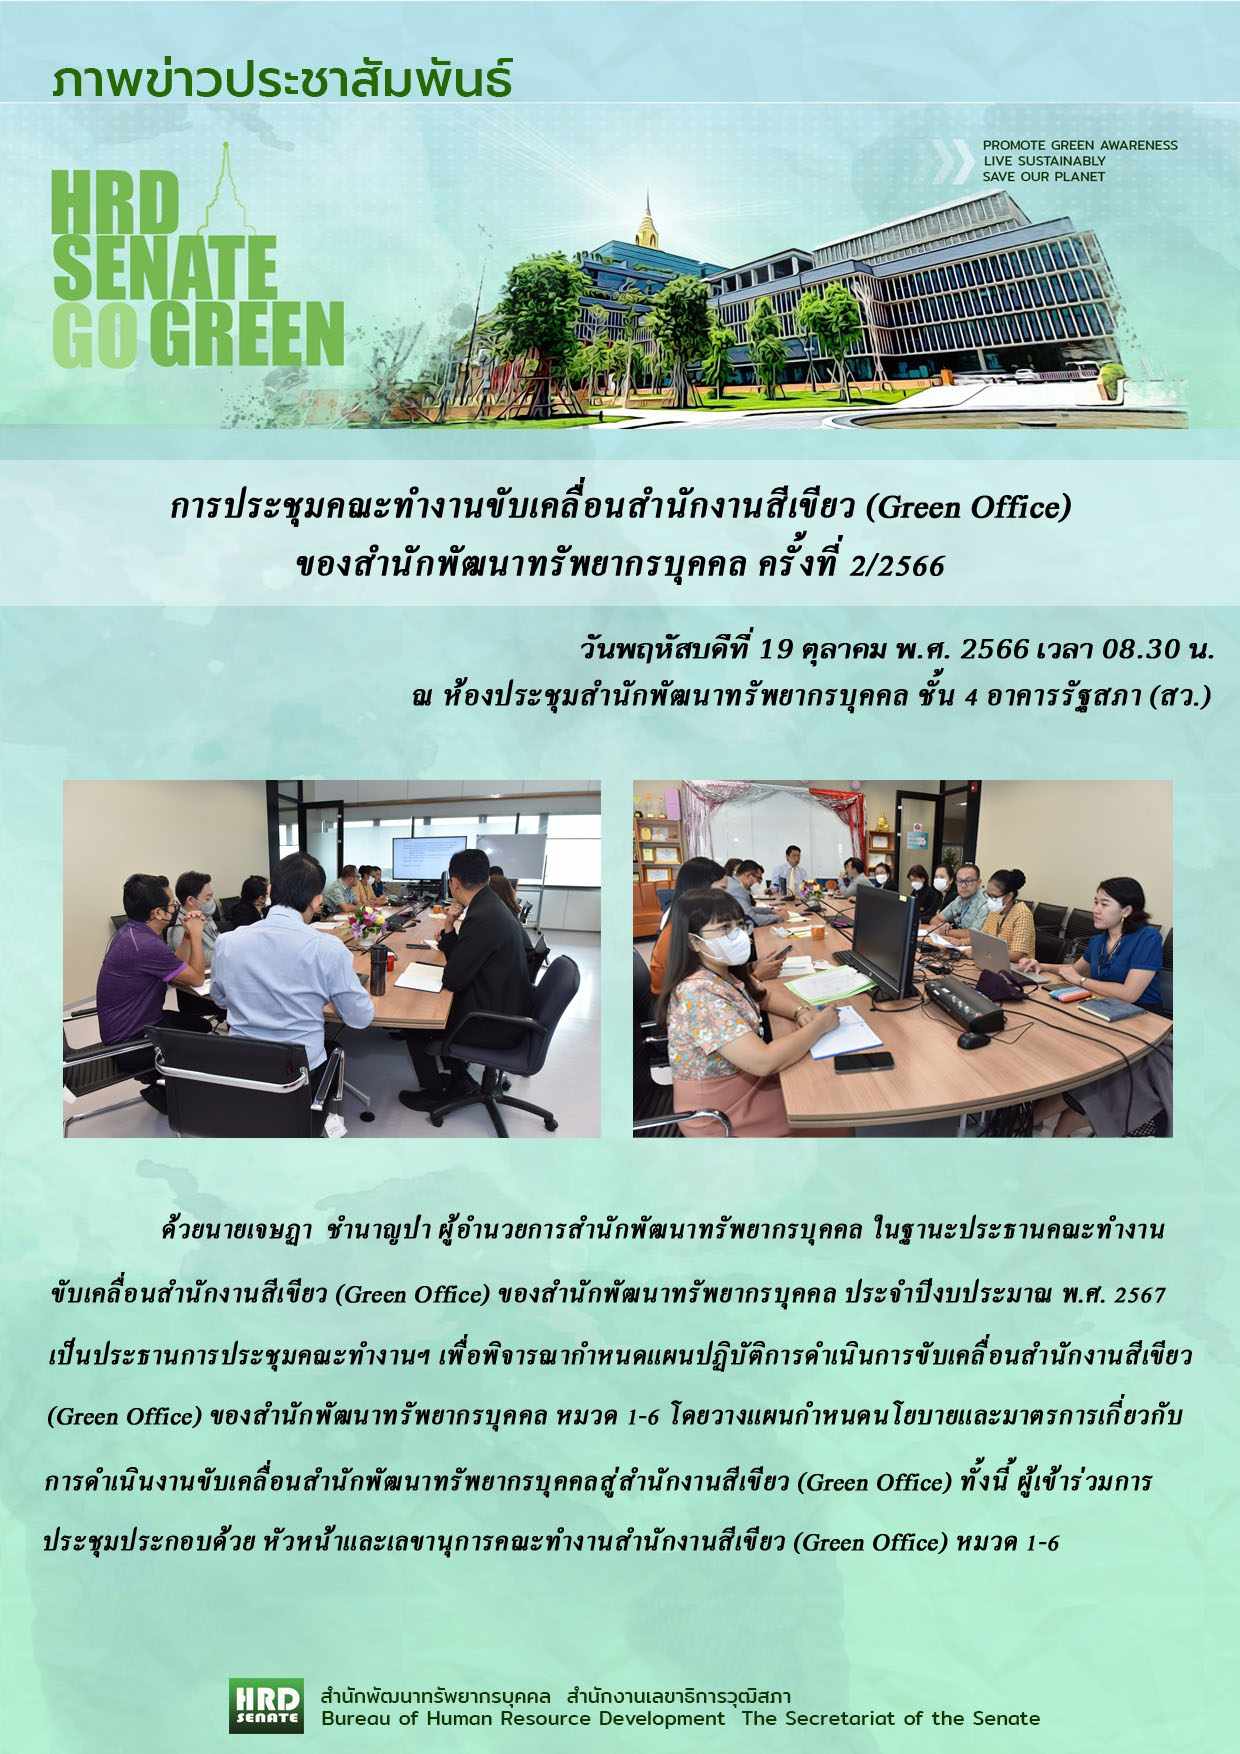 ประชุมคณะทำงานขับเคลื่อนสำนักงานสีเขียว Green Office ของสำนักพัฒนาทรัพยากรบุคคล ครั้งที่ 2-66 (19 ต.ค.66)